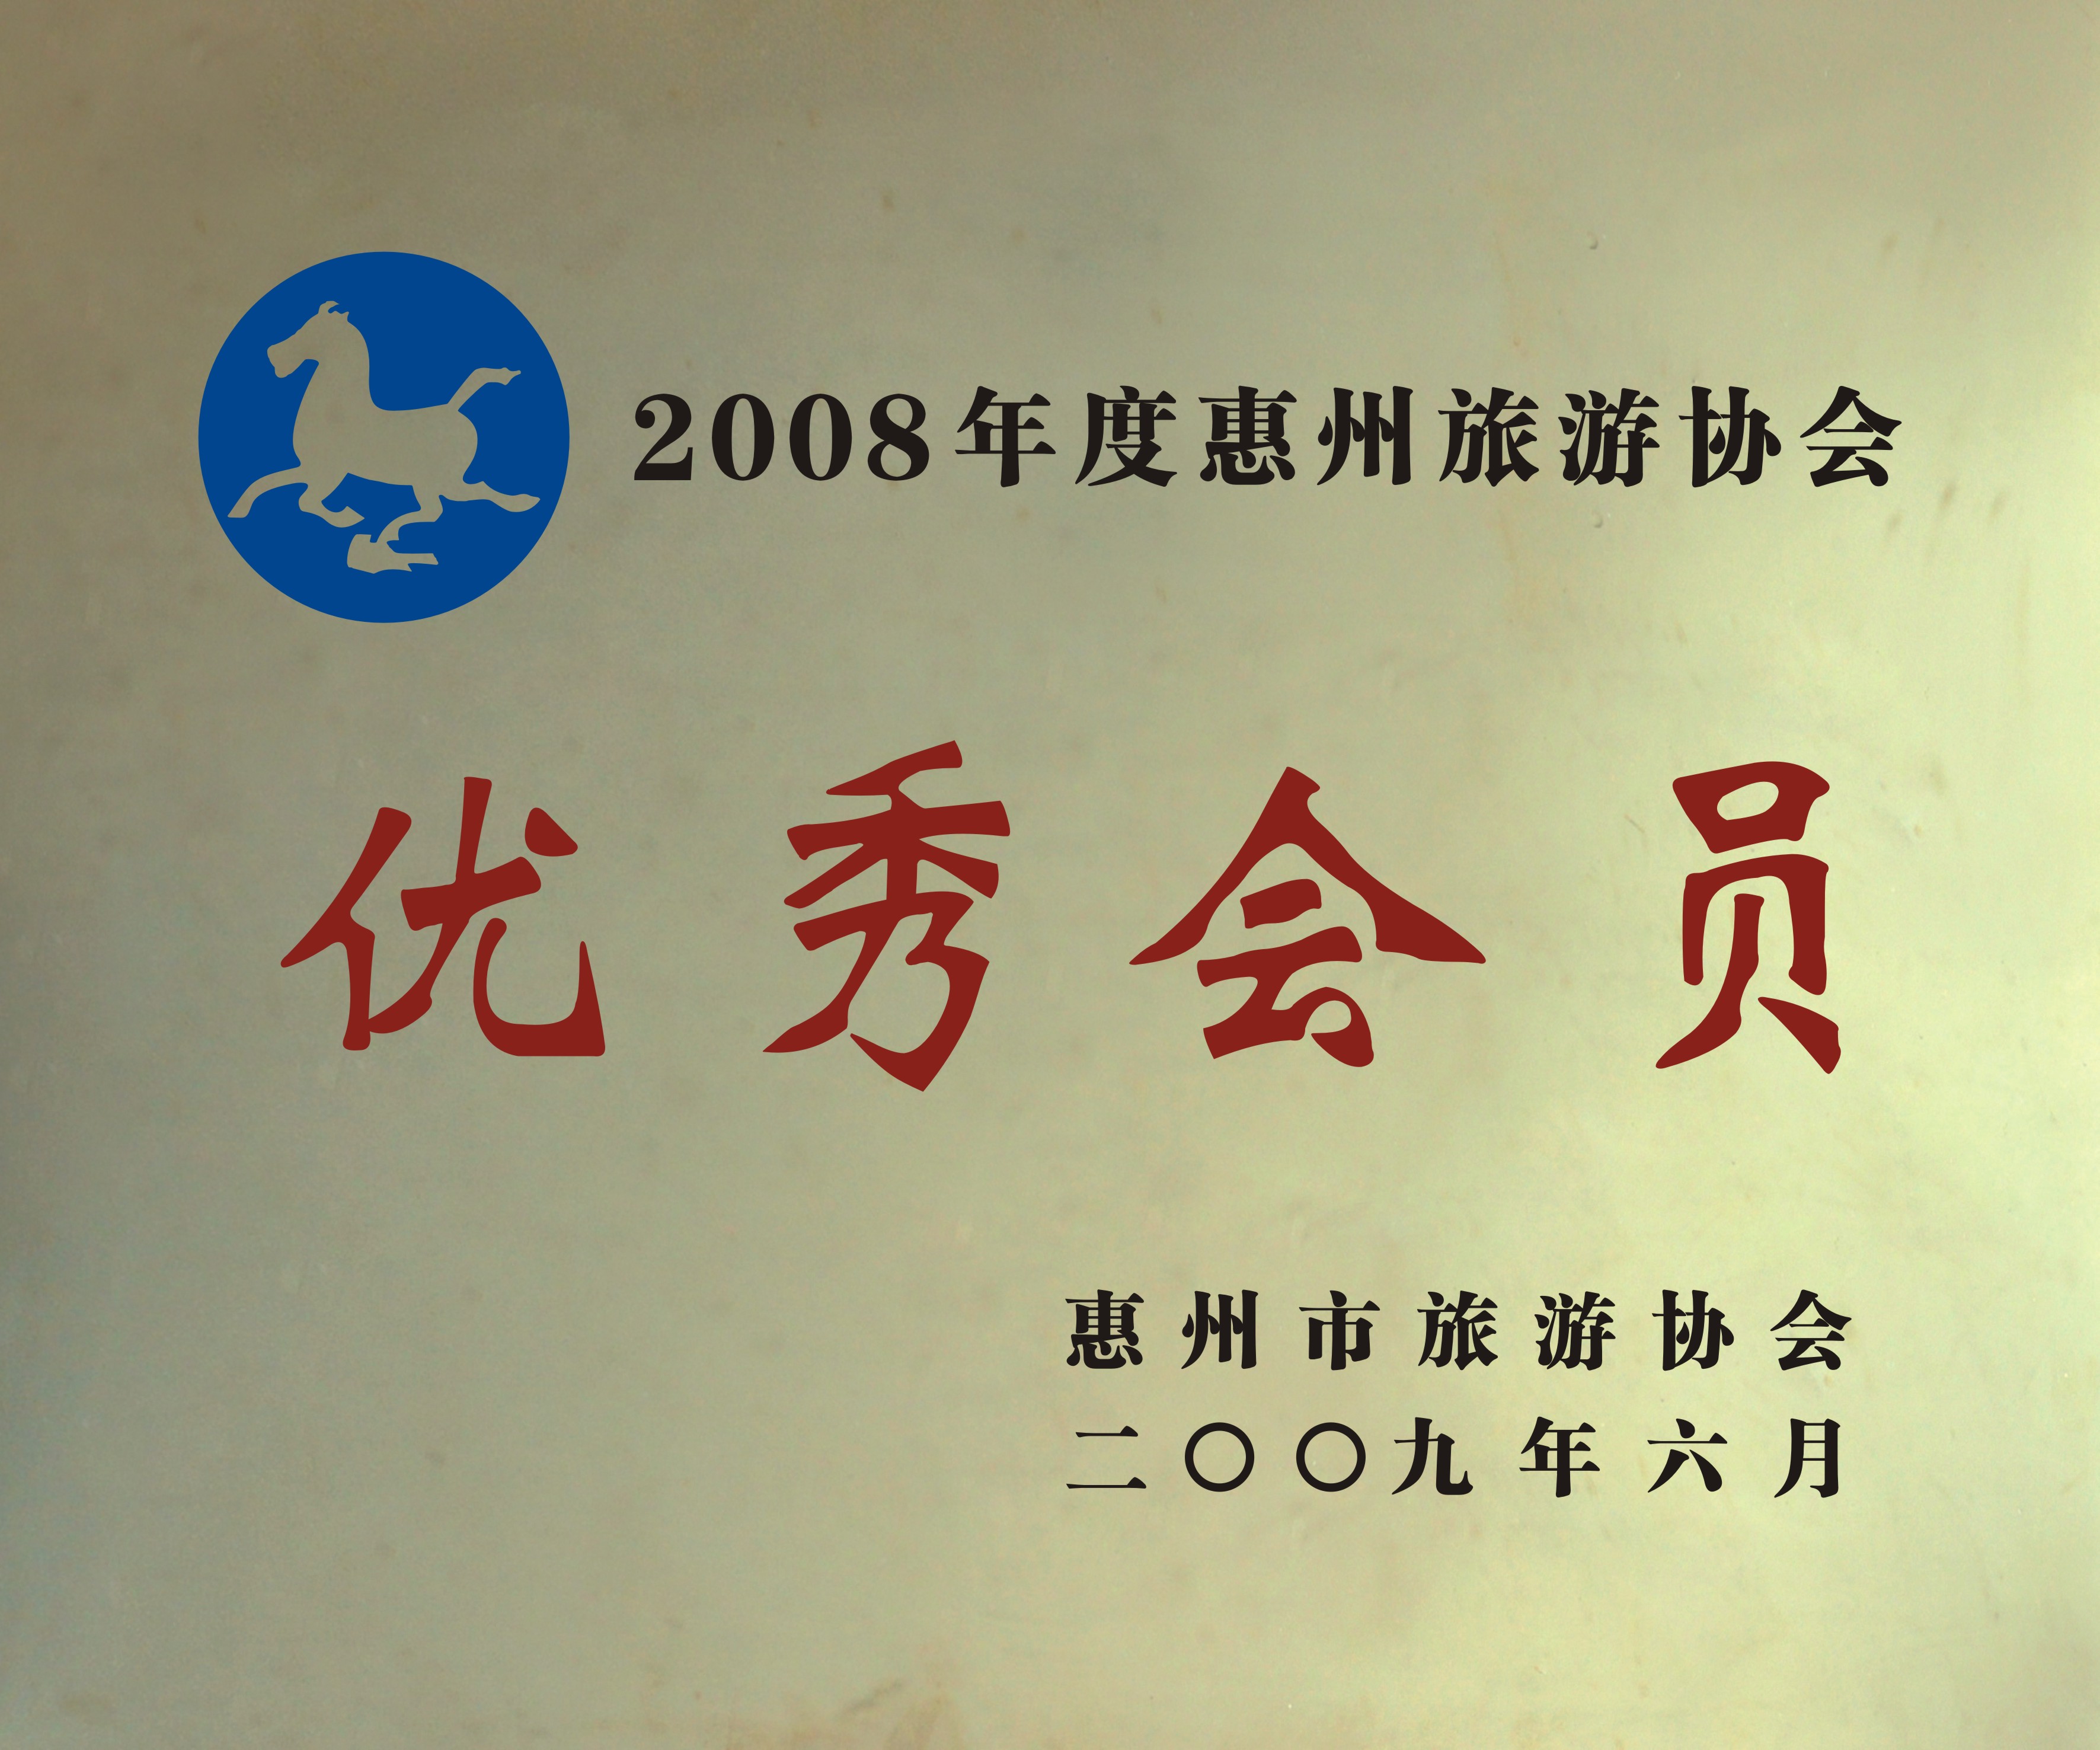 2008年度惠州市旅游协会优秀会员